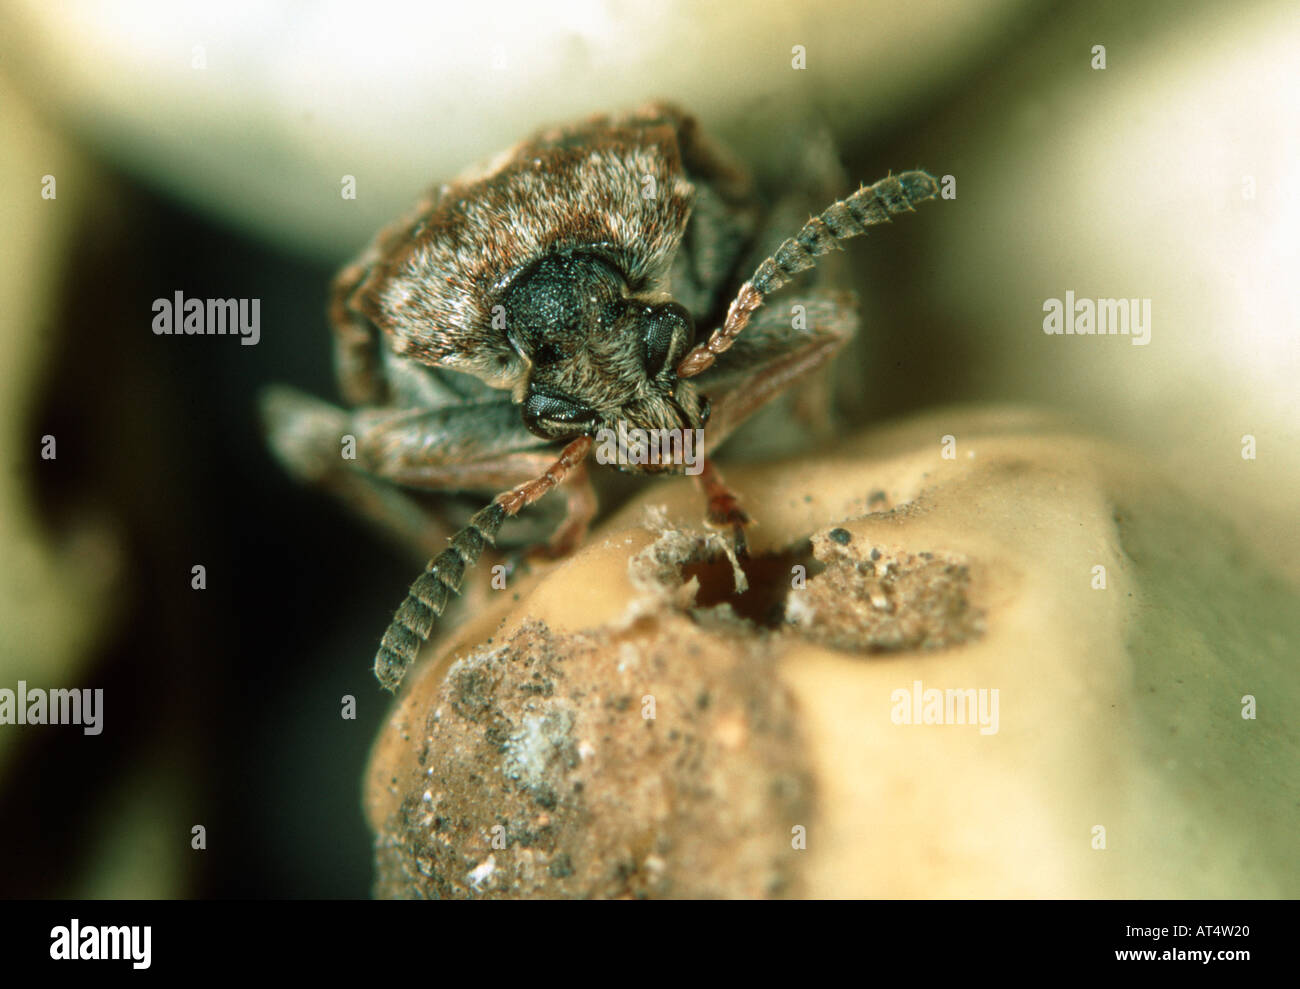 Pea seed beetle Bruchus pisorum adult on a damaged pea seed Stock Photo